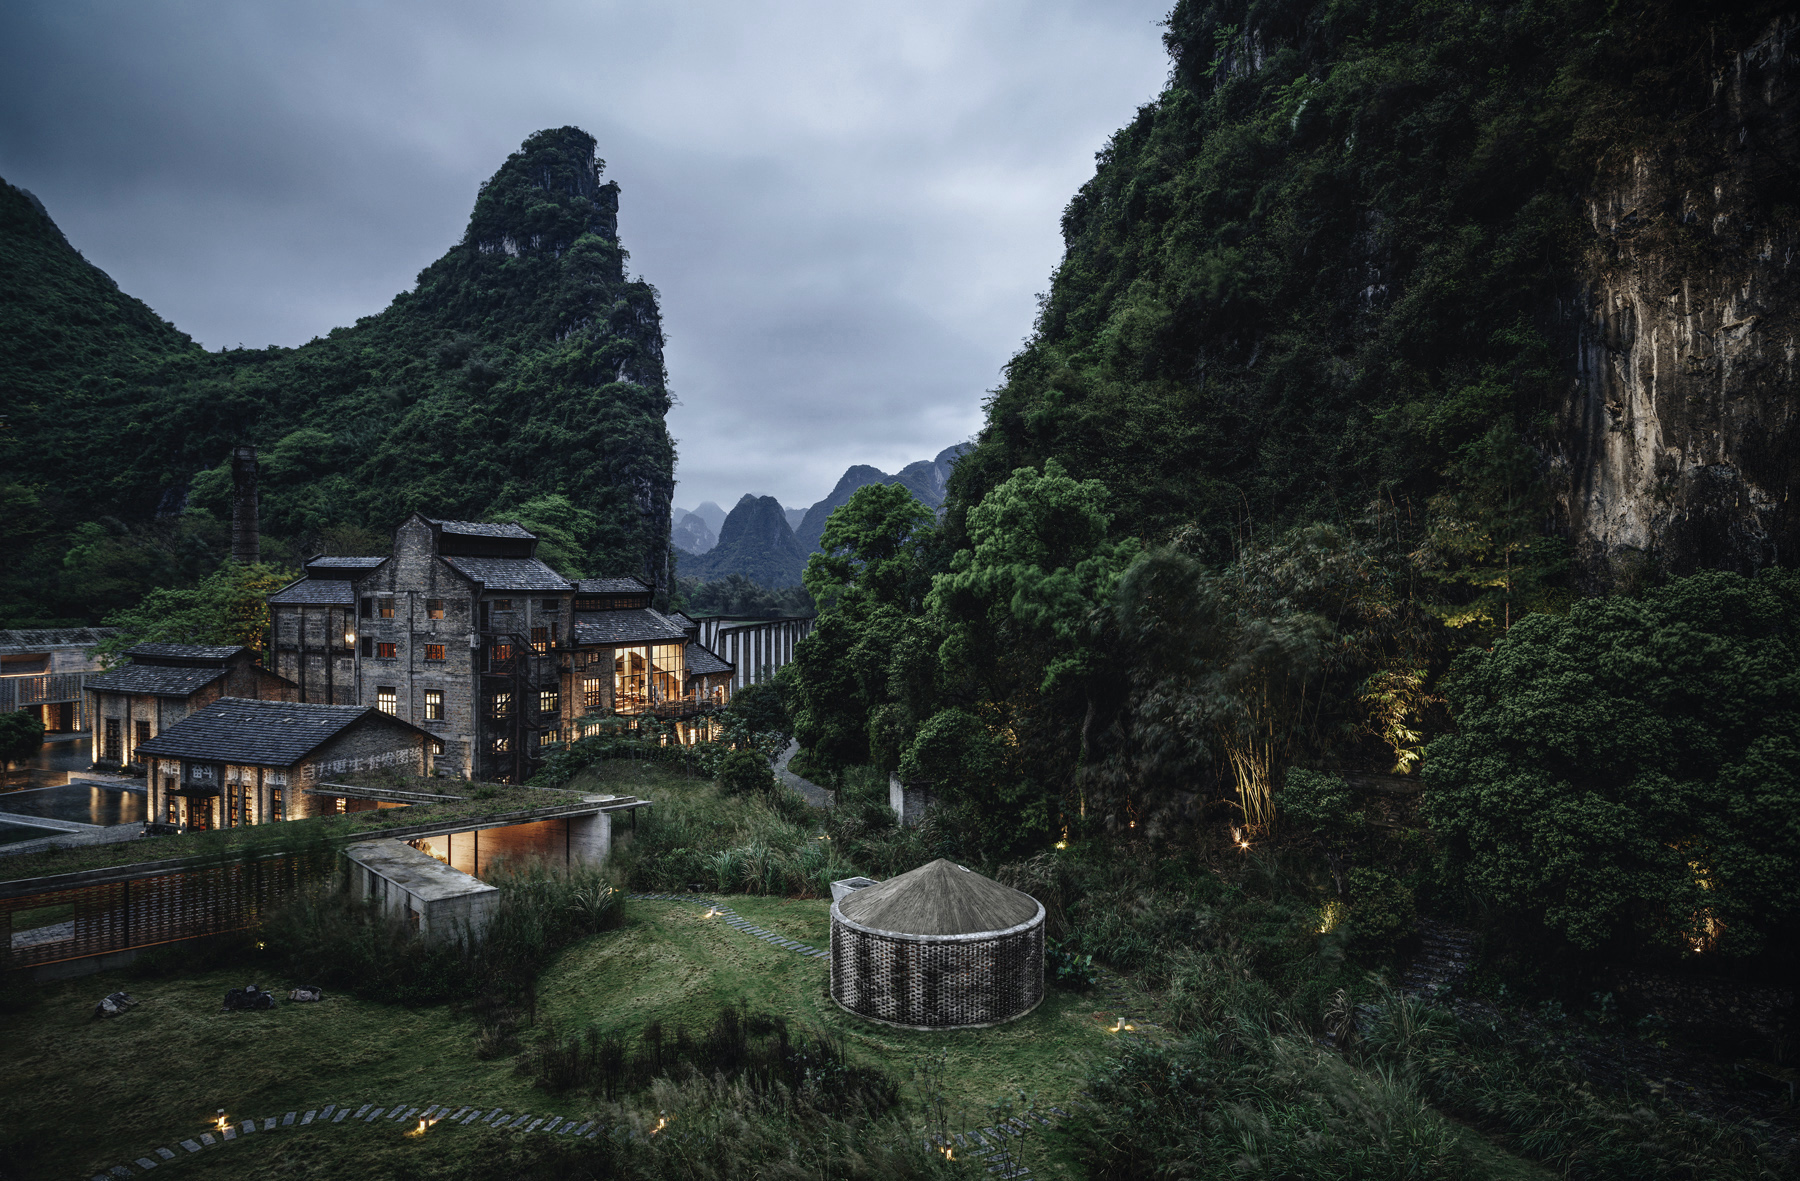 中国奢华酒店19:阳朔糖舍酒店,镶嵌在桂林山水中的建筑艺术品